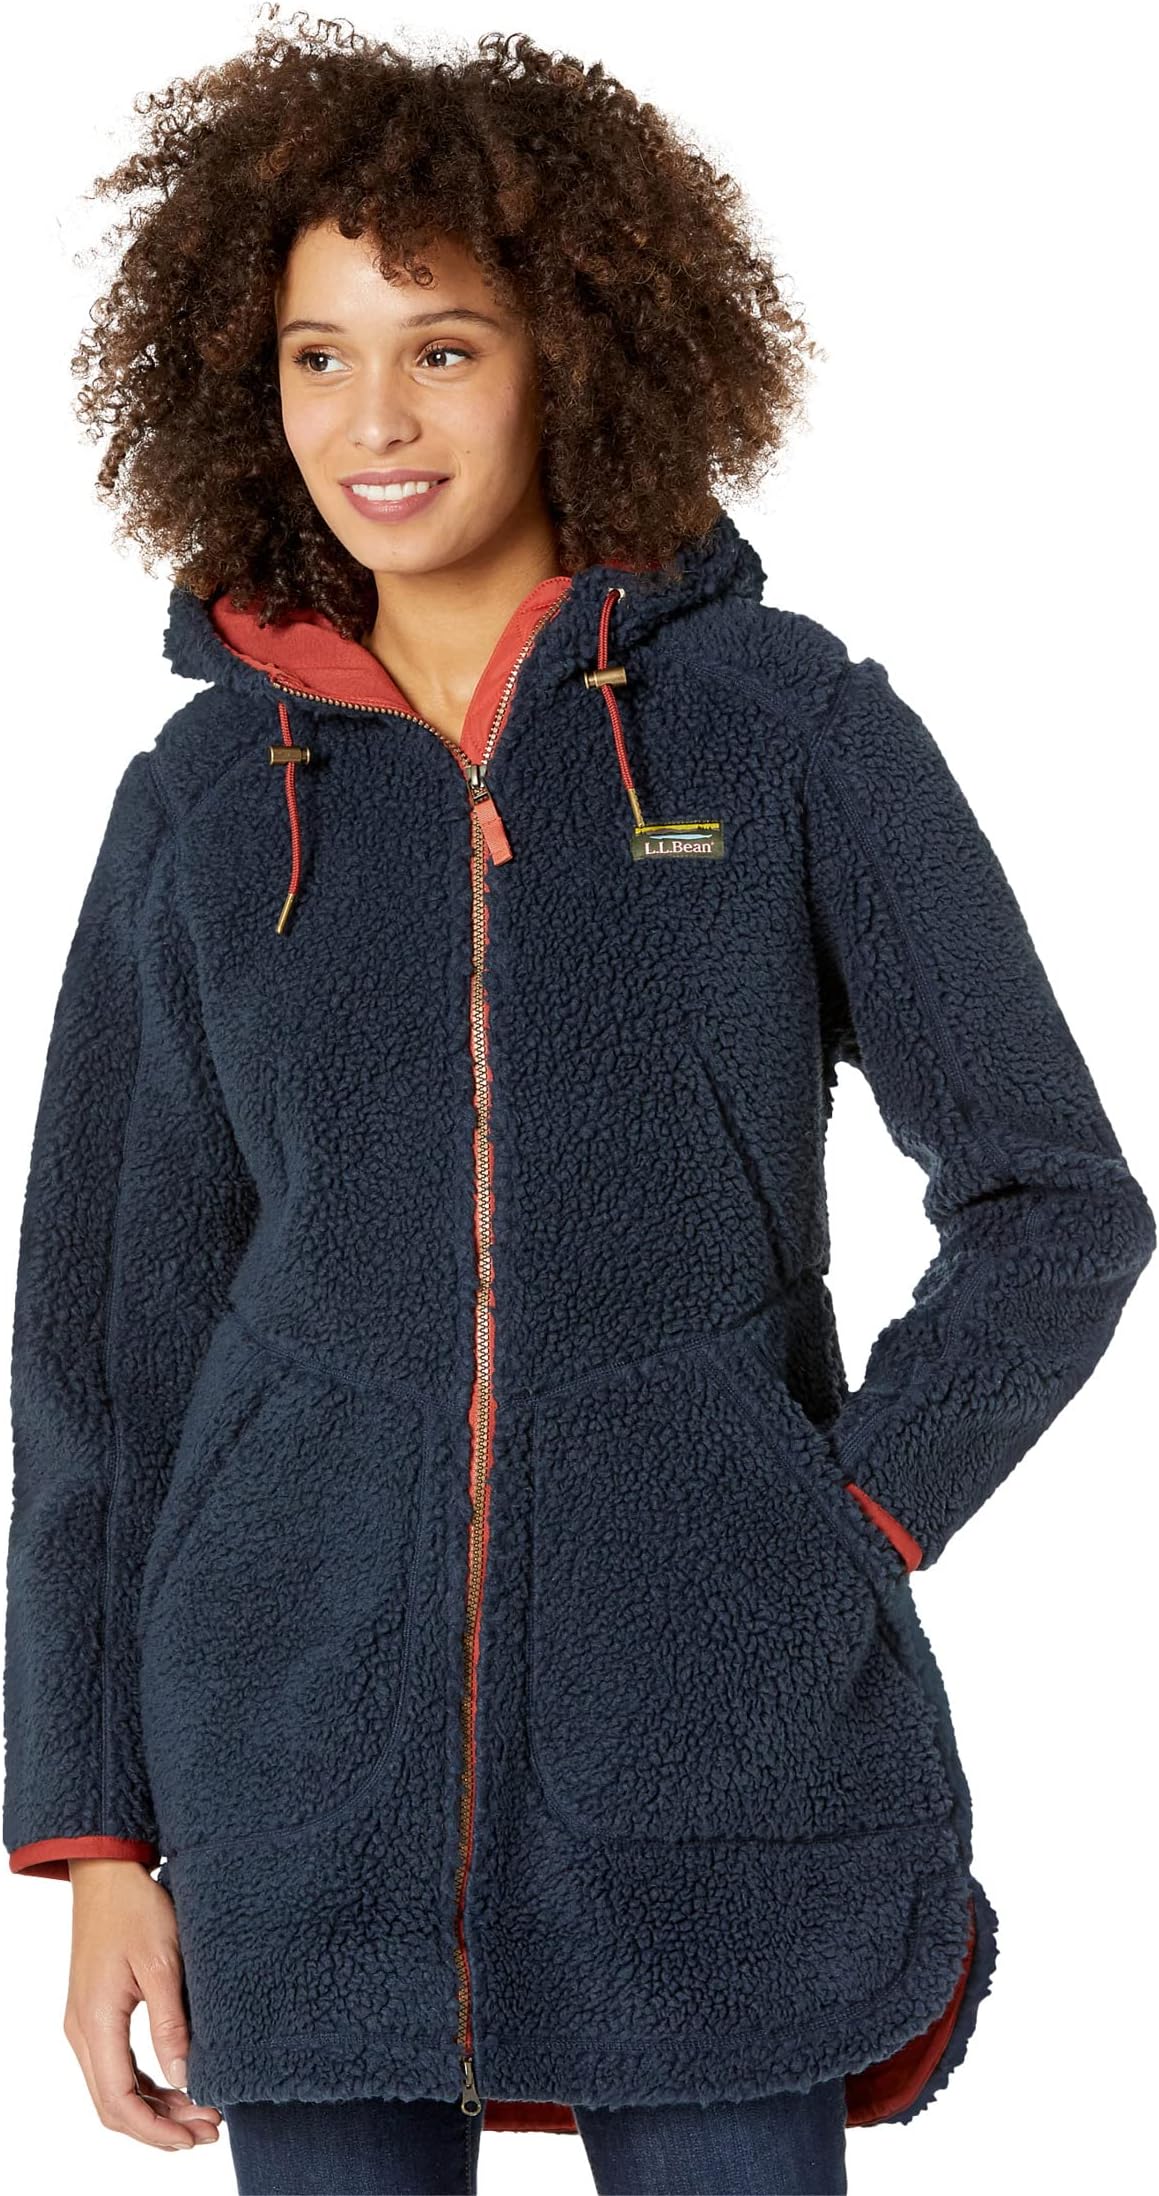 Куртка Mountain Pile Fleece Coat L.L.Bean, цвет Carbon Navy